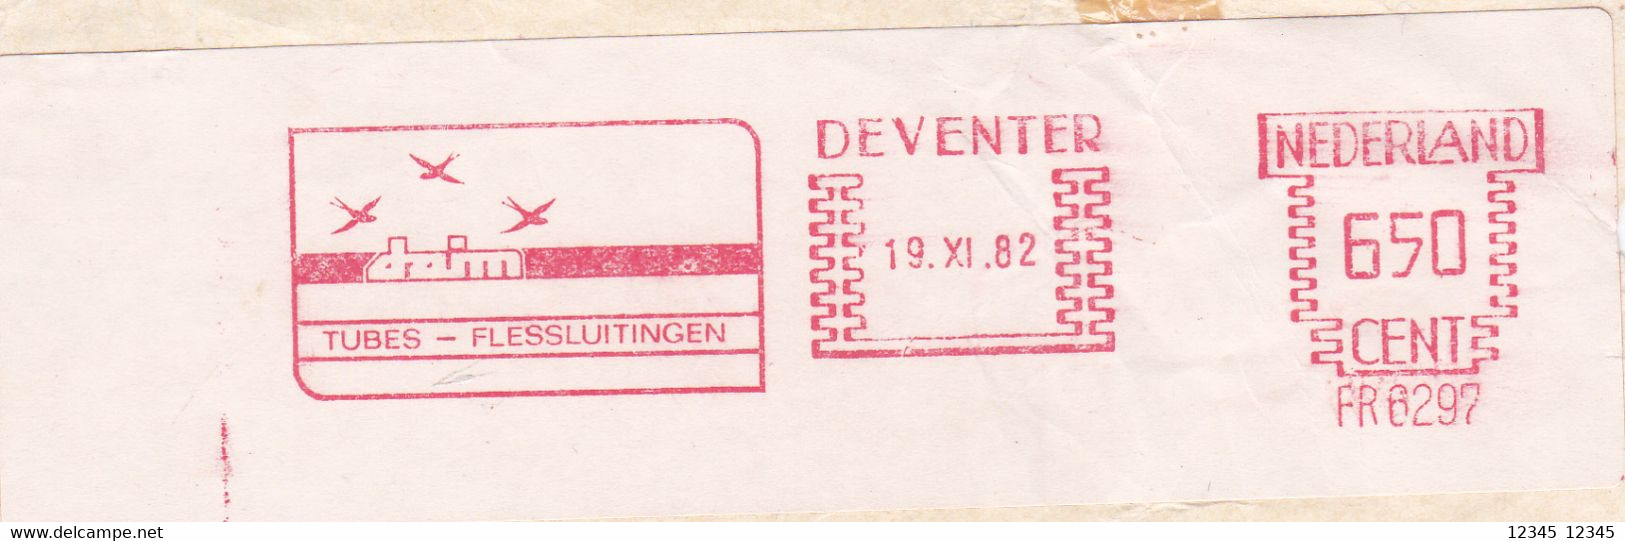 Nederland 1982, Daim Tubes-flessluitingen, Deventer - Machines à Affranchir (EMA)